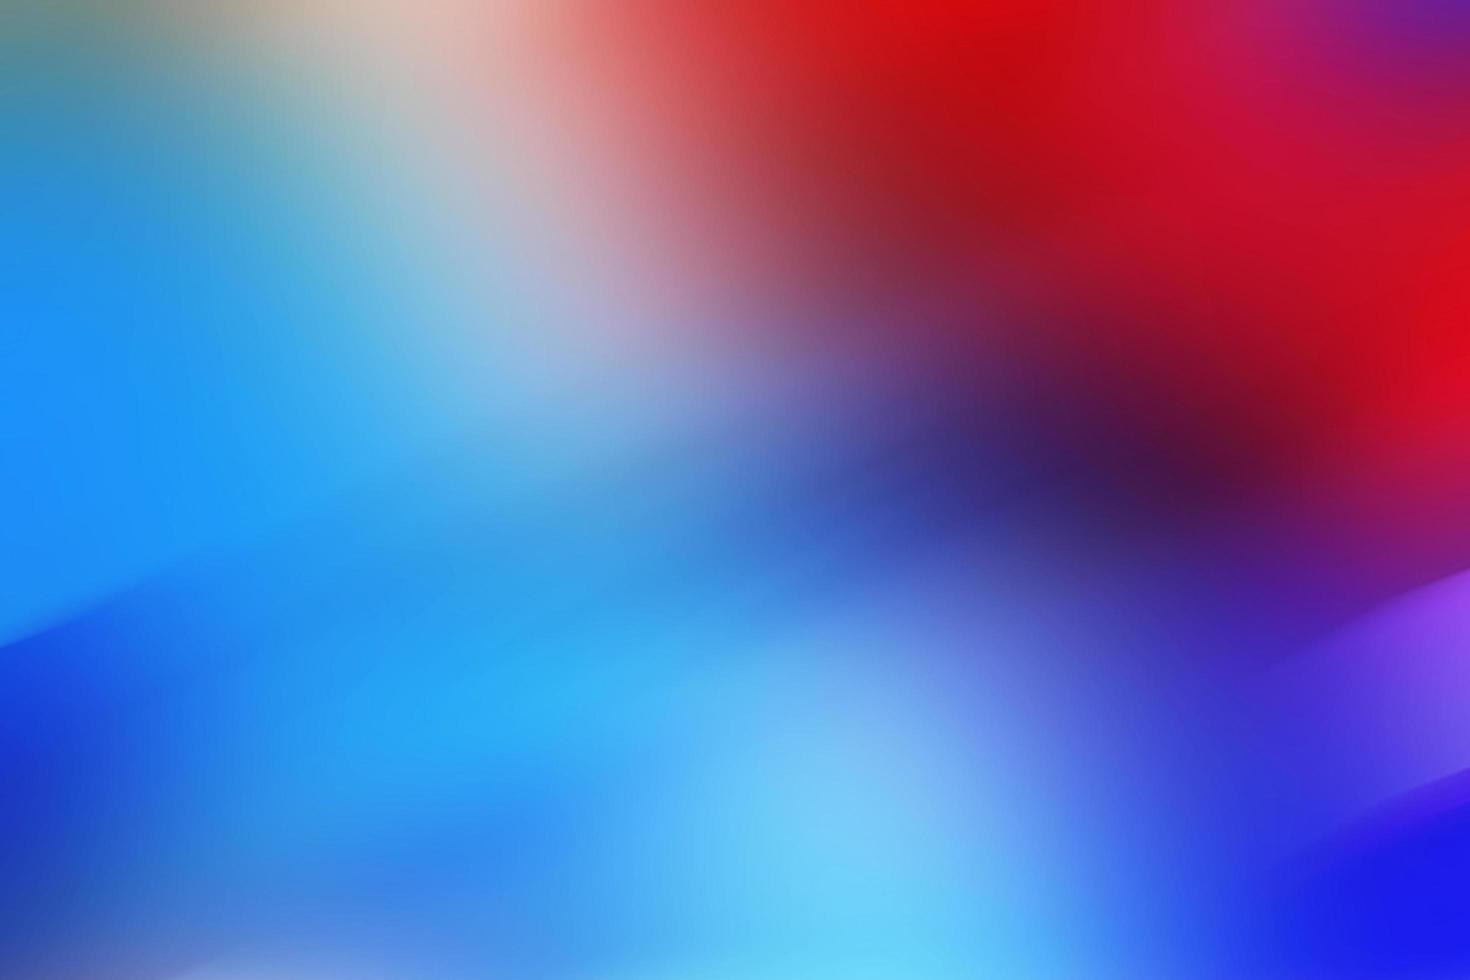 vif flou coloré abstrait géométrique rayures Contexte défocalisé fond d'écran photo illustration